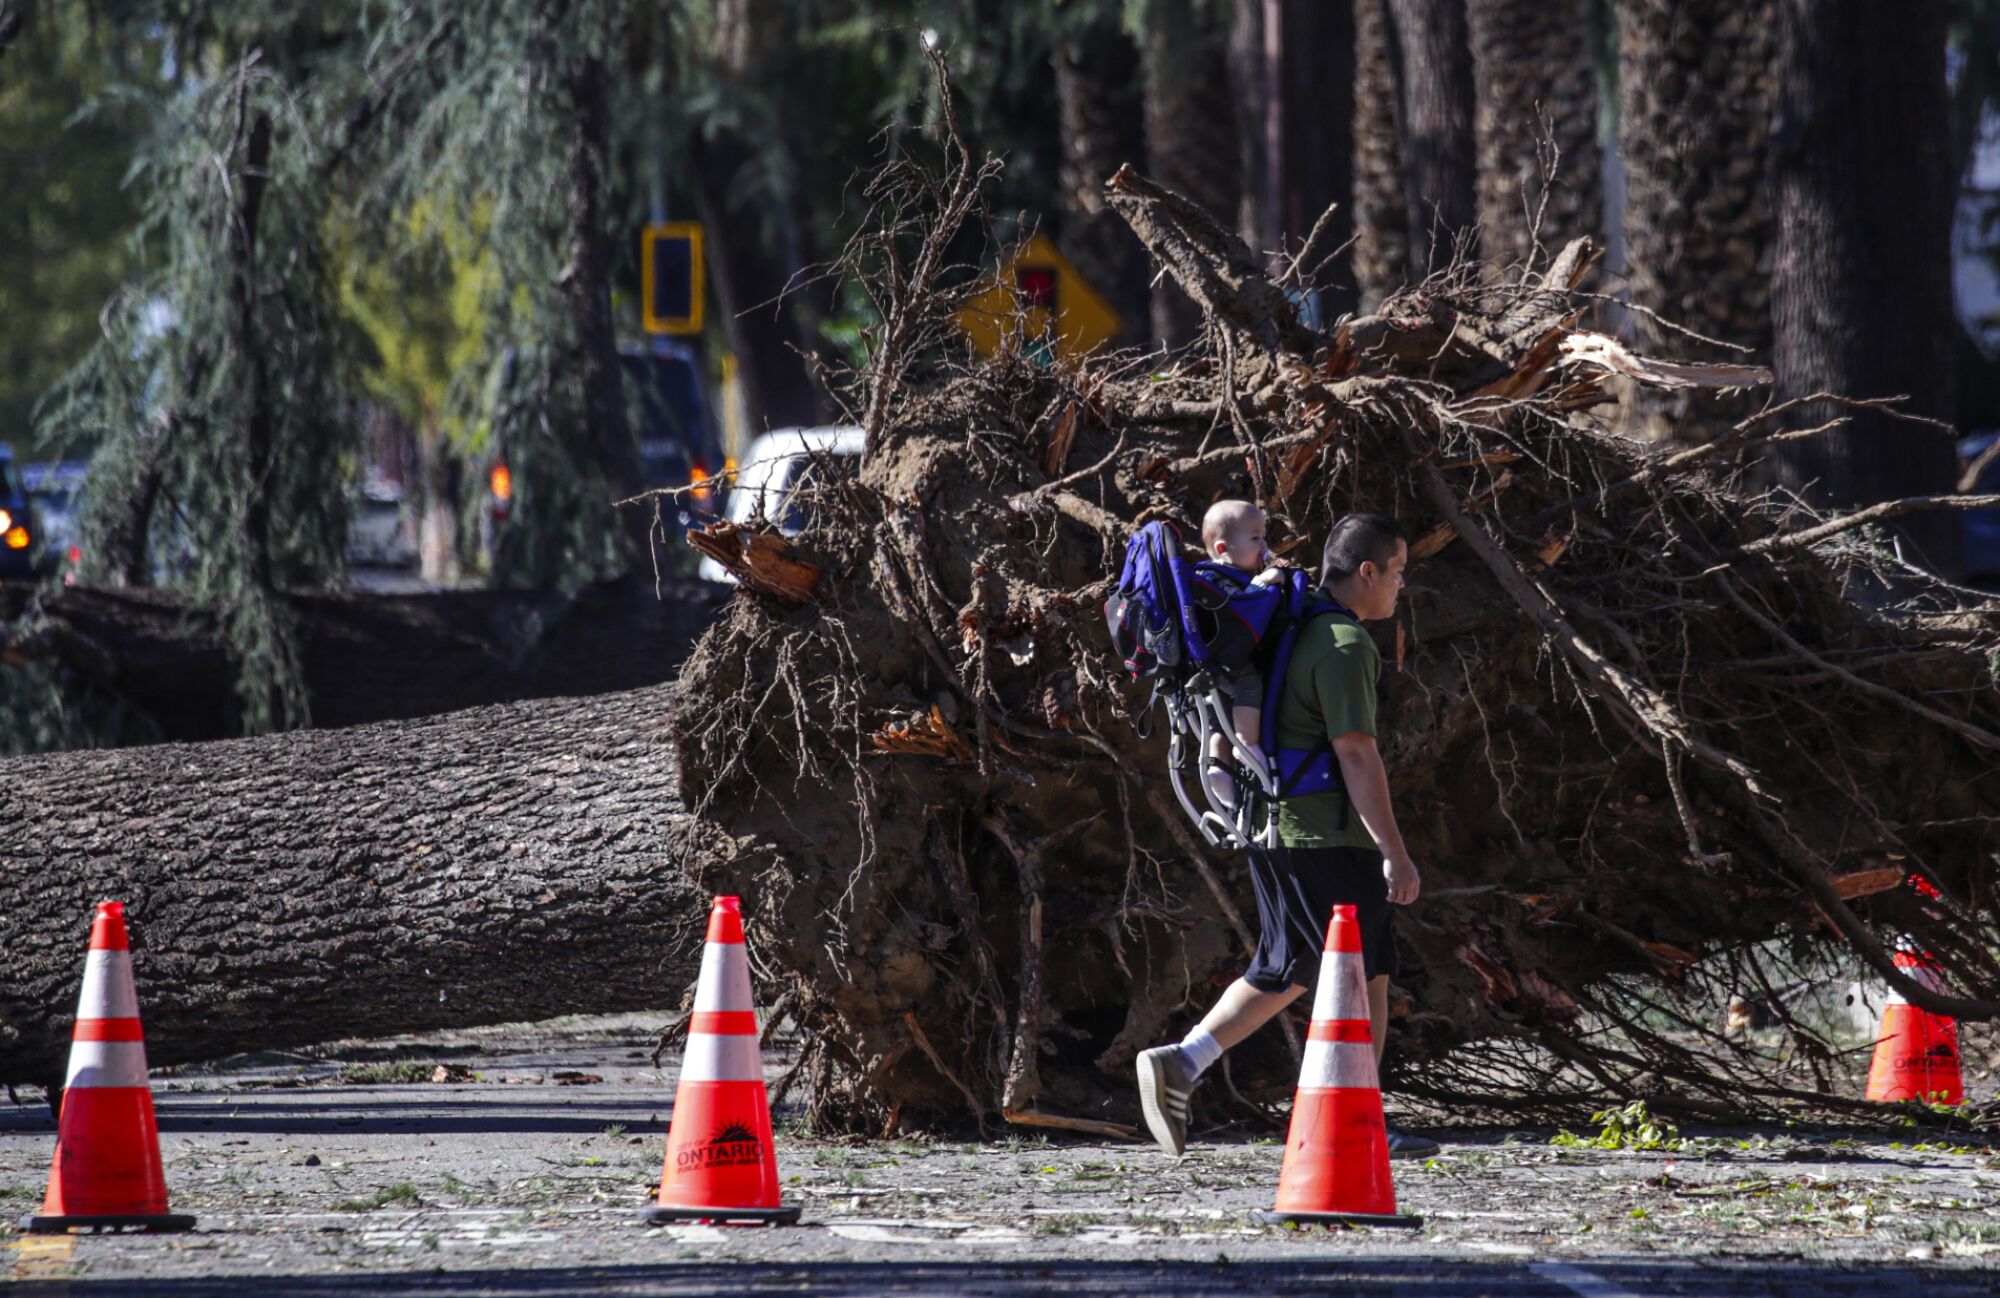  A pedestrian walks pass a massive tree toppled